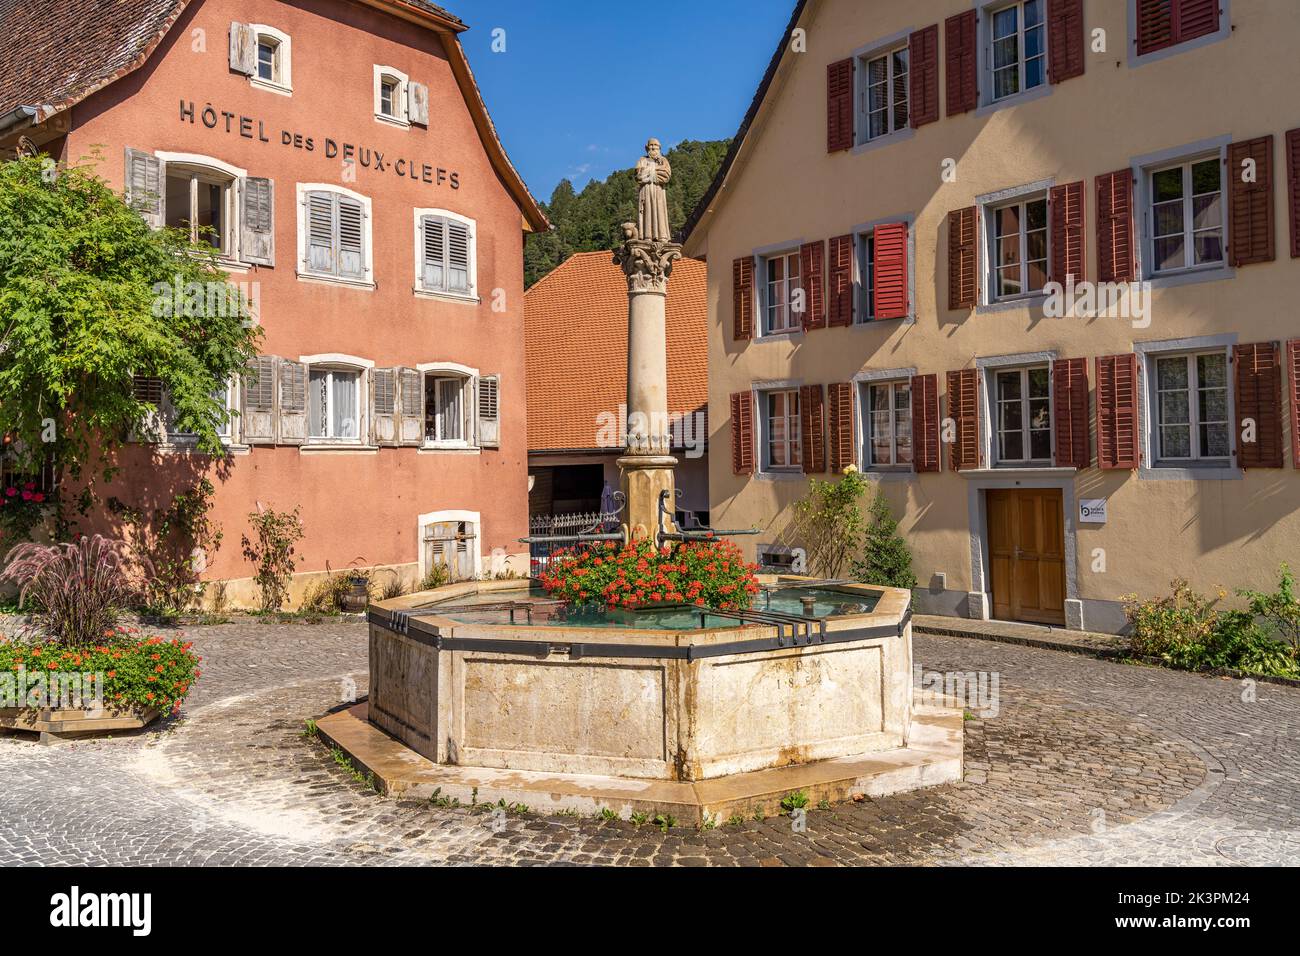 Der Brunnen Fontaine du Mai in der historischen Altstadt von Saint-Ursanne, Schweiz, Europa | Fontaine du Mai Brunnen in der historischen Altstadt von S Stockfoto